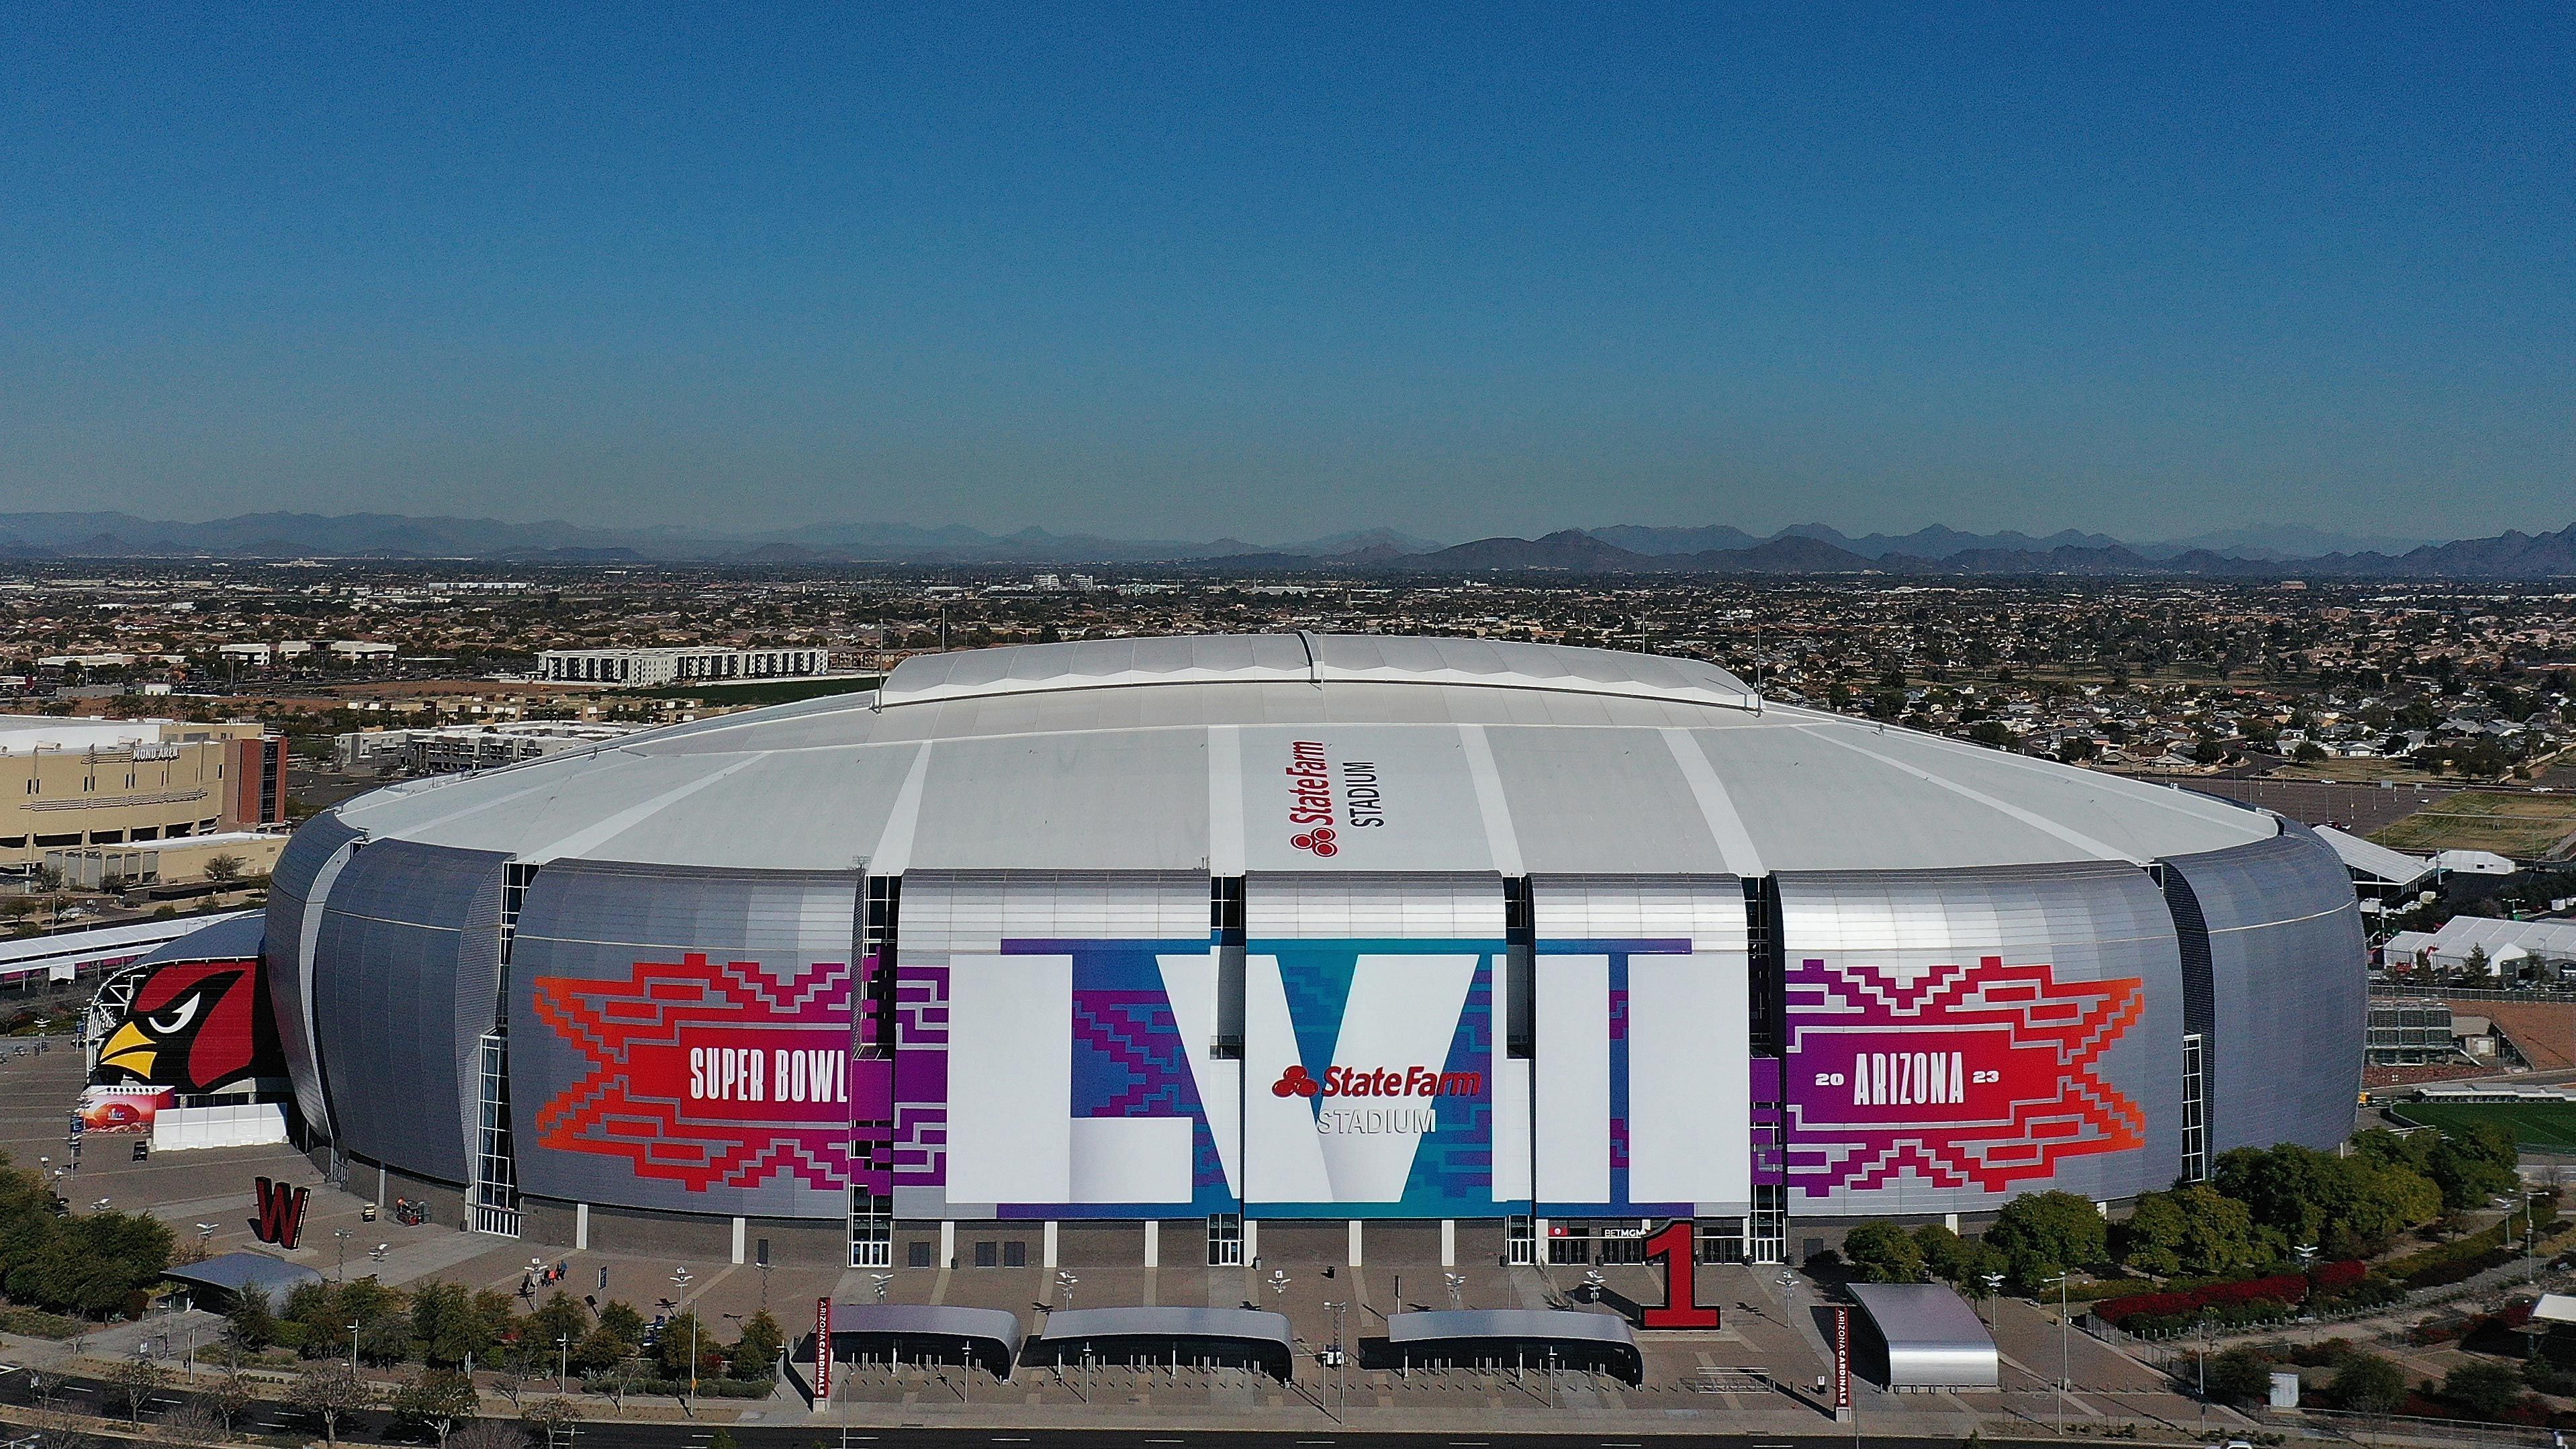 
                <strong>Super Bowl LVII: Die besten Bilder vom State Farm Stadium aus Glendale, Arizona</strong><br>
                Offiziell beträgt die Kapazität des State Farm Stadiums 63.400 Plätze. Zu besonderen Anlässen - wie z.B. dem Super Bowl - kann diese jedoch auf bis zu 73.000 Plätze erweitert werden.
              